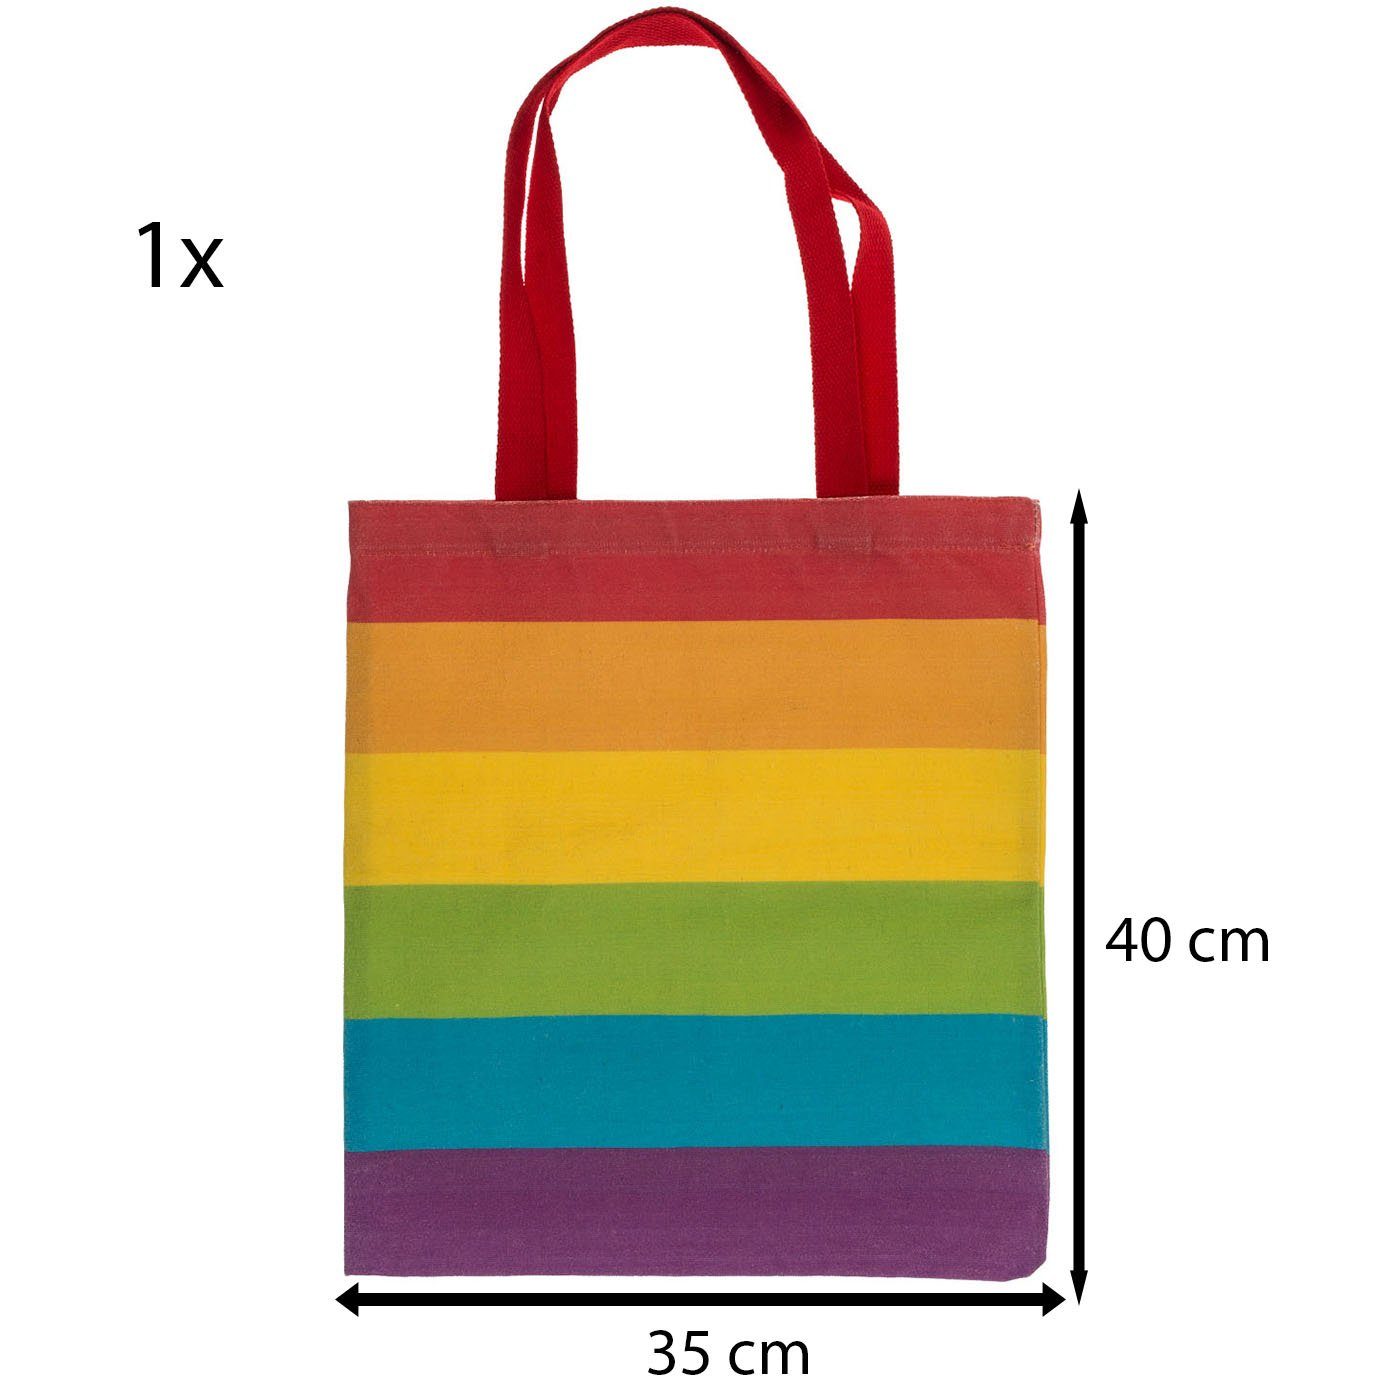 ReWu Einkaufsbeutel ReWu CSD Regenbogen Pride SET